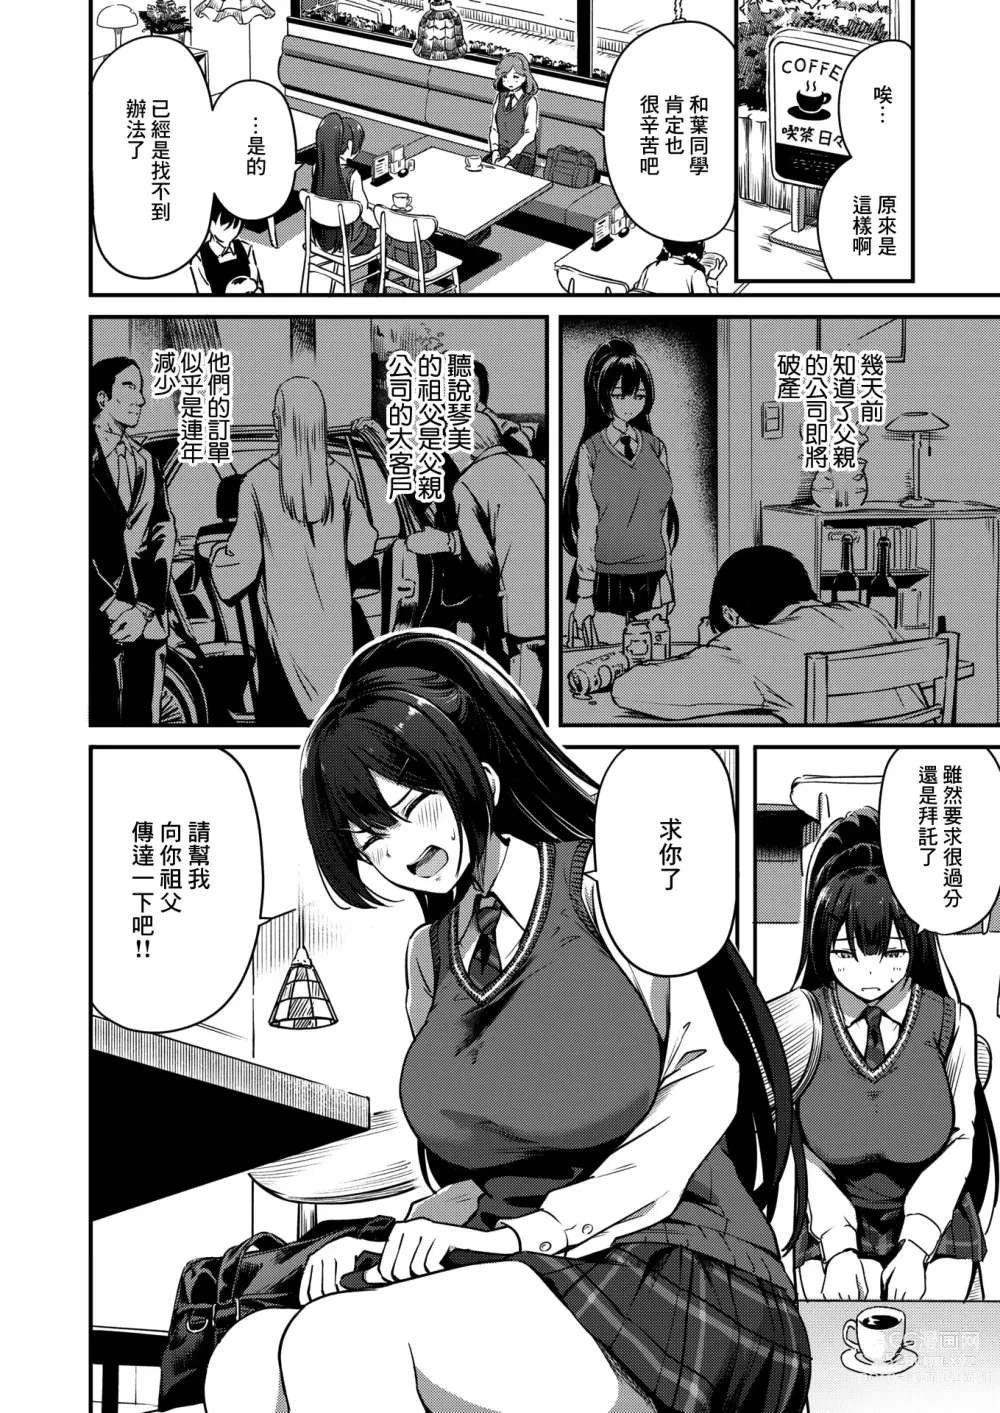 Page 3 of manga Naraba Kono Mi o Sasageyou